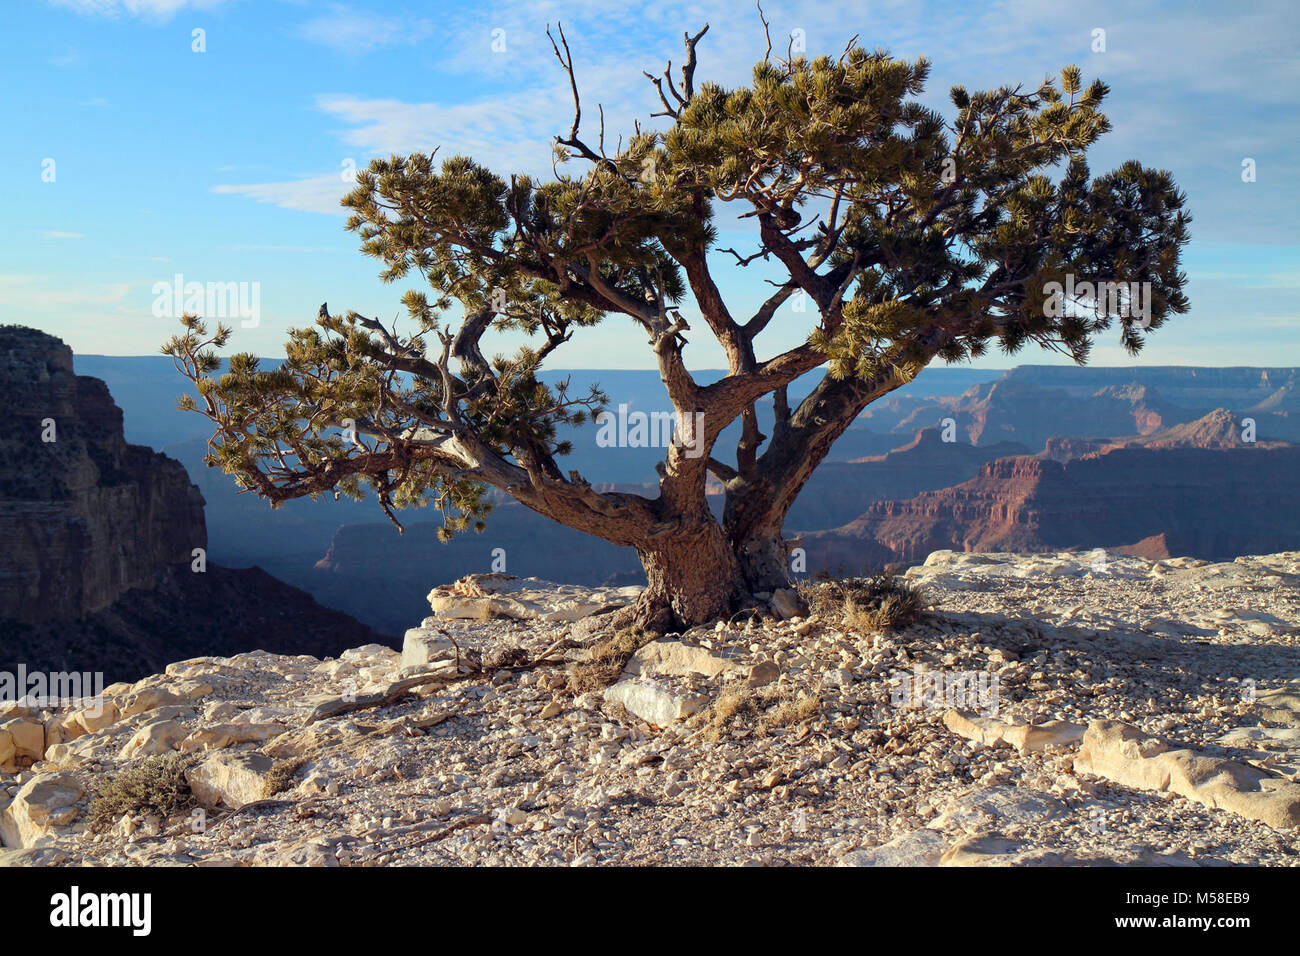 Économe de l'eau Bonsaï Arbre le long de la Rim du Grand Canyon . Ce pin pinyon issu de roche calcaire le long du bord du canyon est soumis à un environnement plus sévère que ses voisins dans les zones boisées à proximité. Ici, le long de la rim, de fréquents vents élevés et une pénurie de terres arables et l'eau font plus de survie difficile. Le système racinaire d'un petit arbre comme cela peut être énorme, descendant dans la roche les fissures et crevasses, ce qui permet à l'arbre pour récolter l'eau qu'il a besoin pour survivre. Banque D'Images